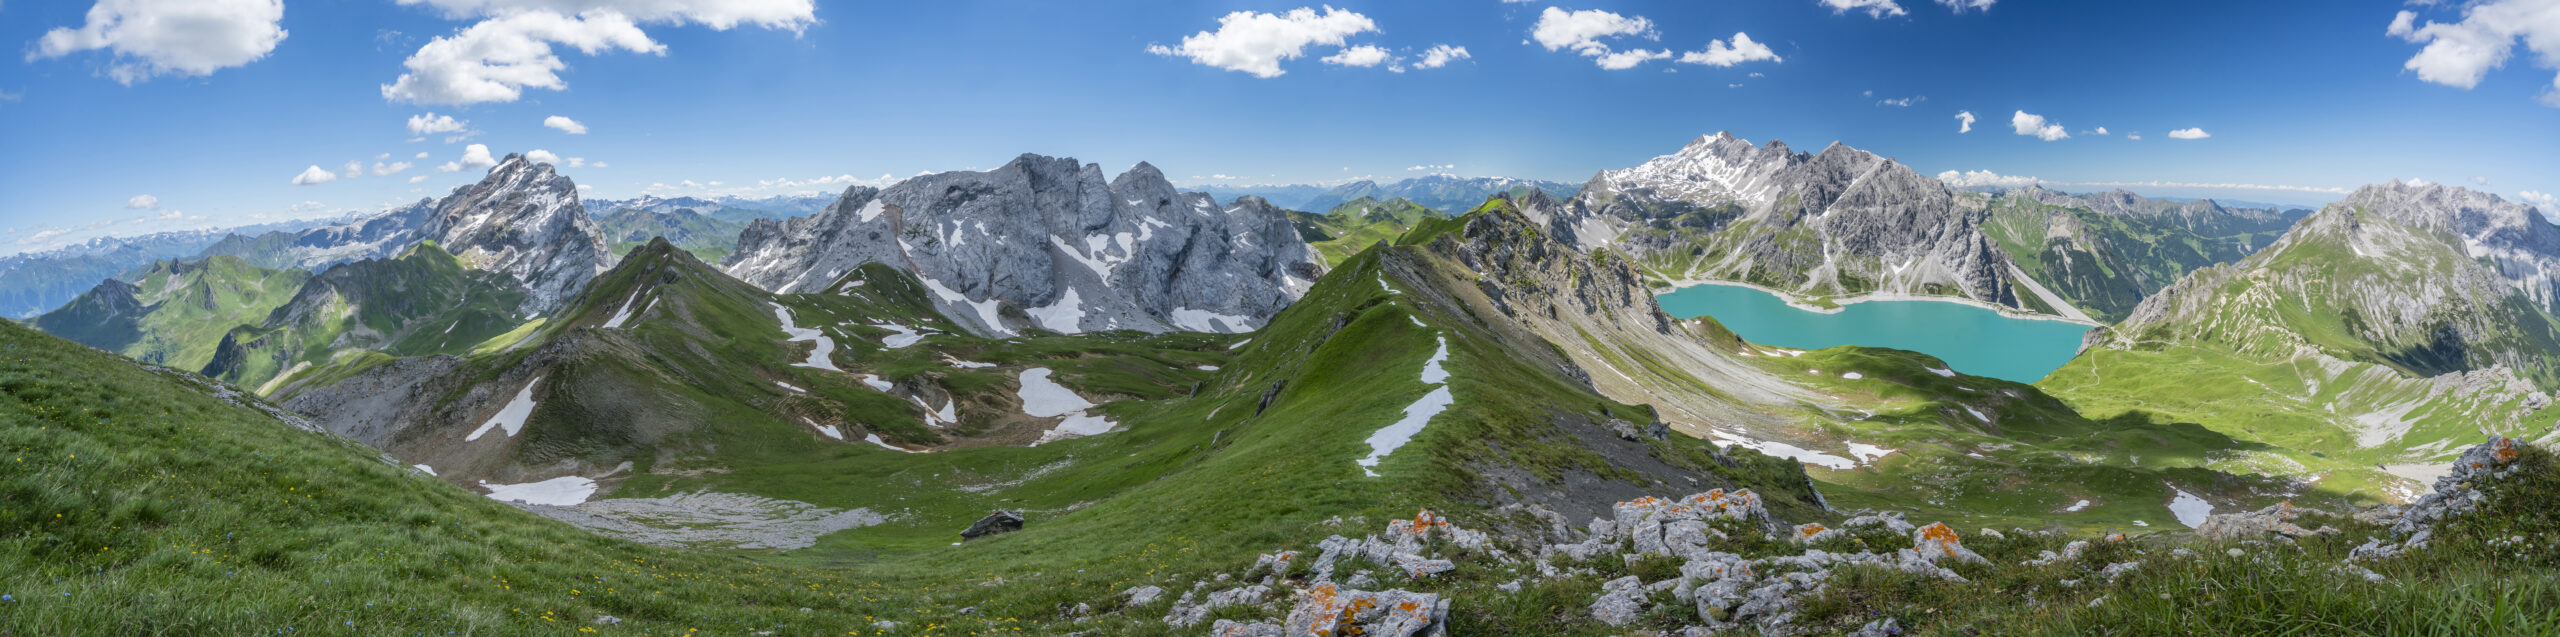 Im Bann der Alpen – meine Tour durch die Schweiz